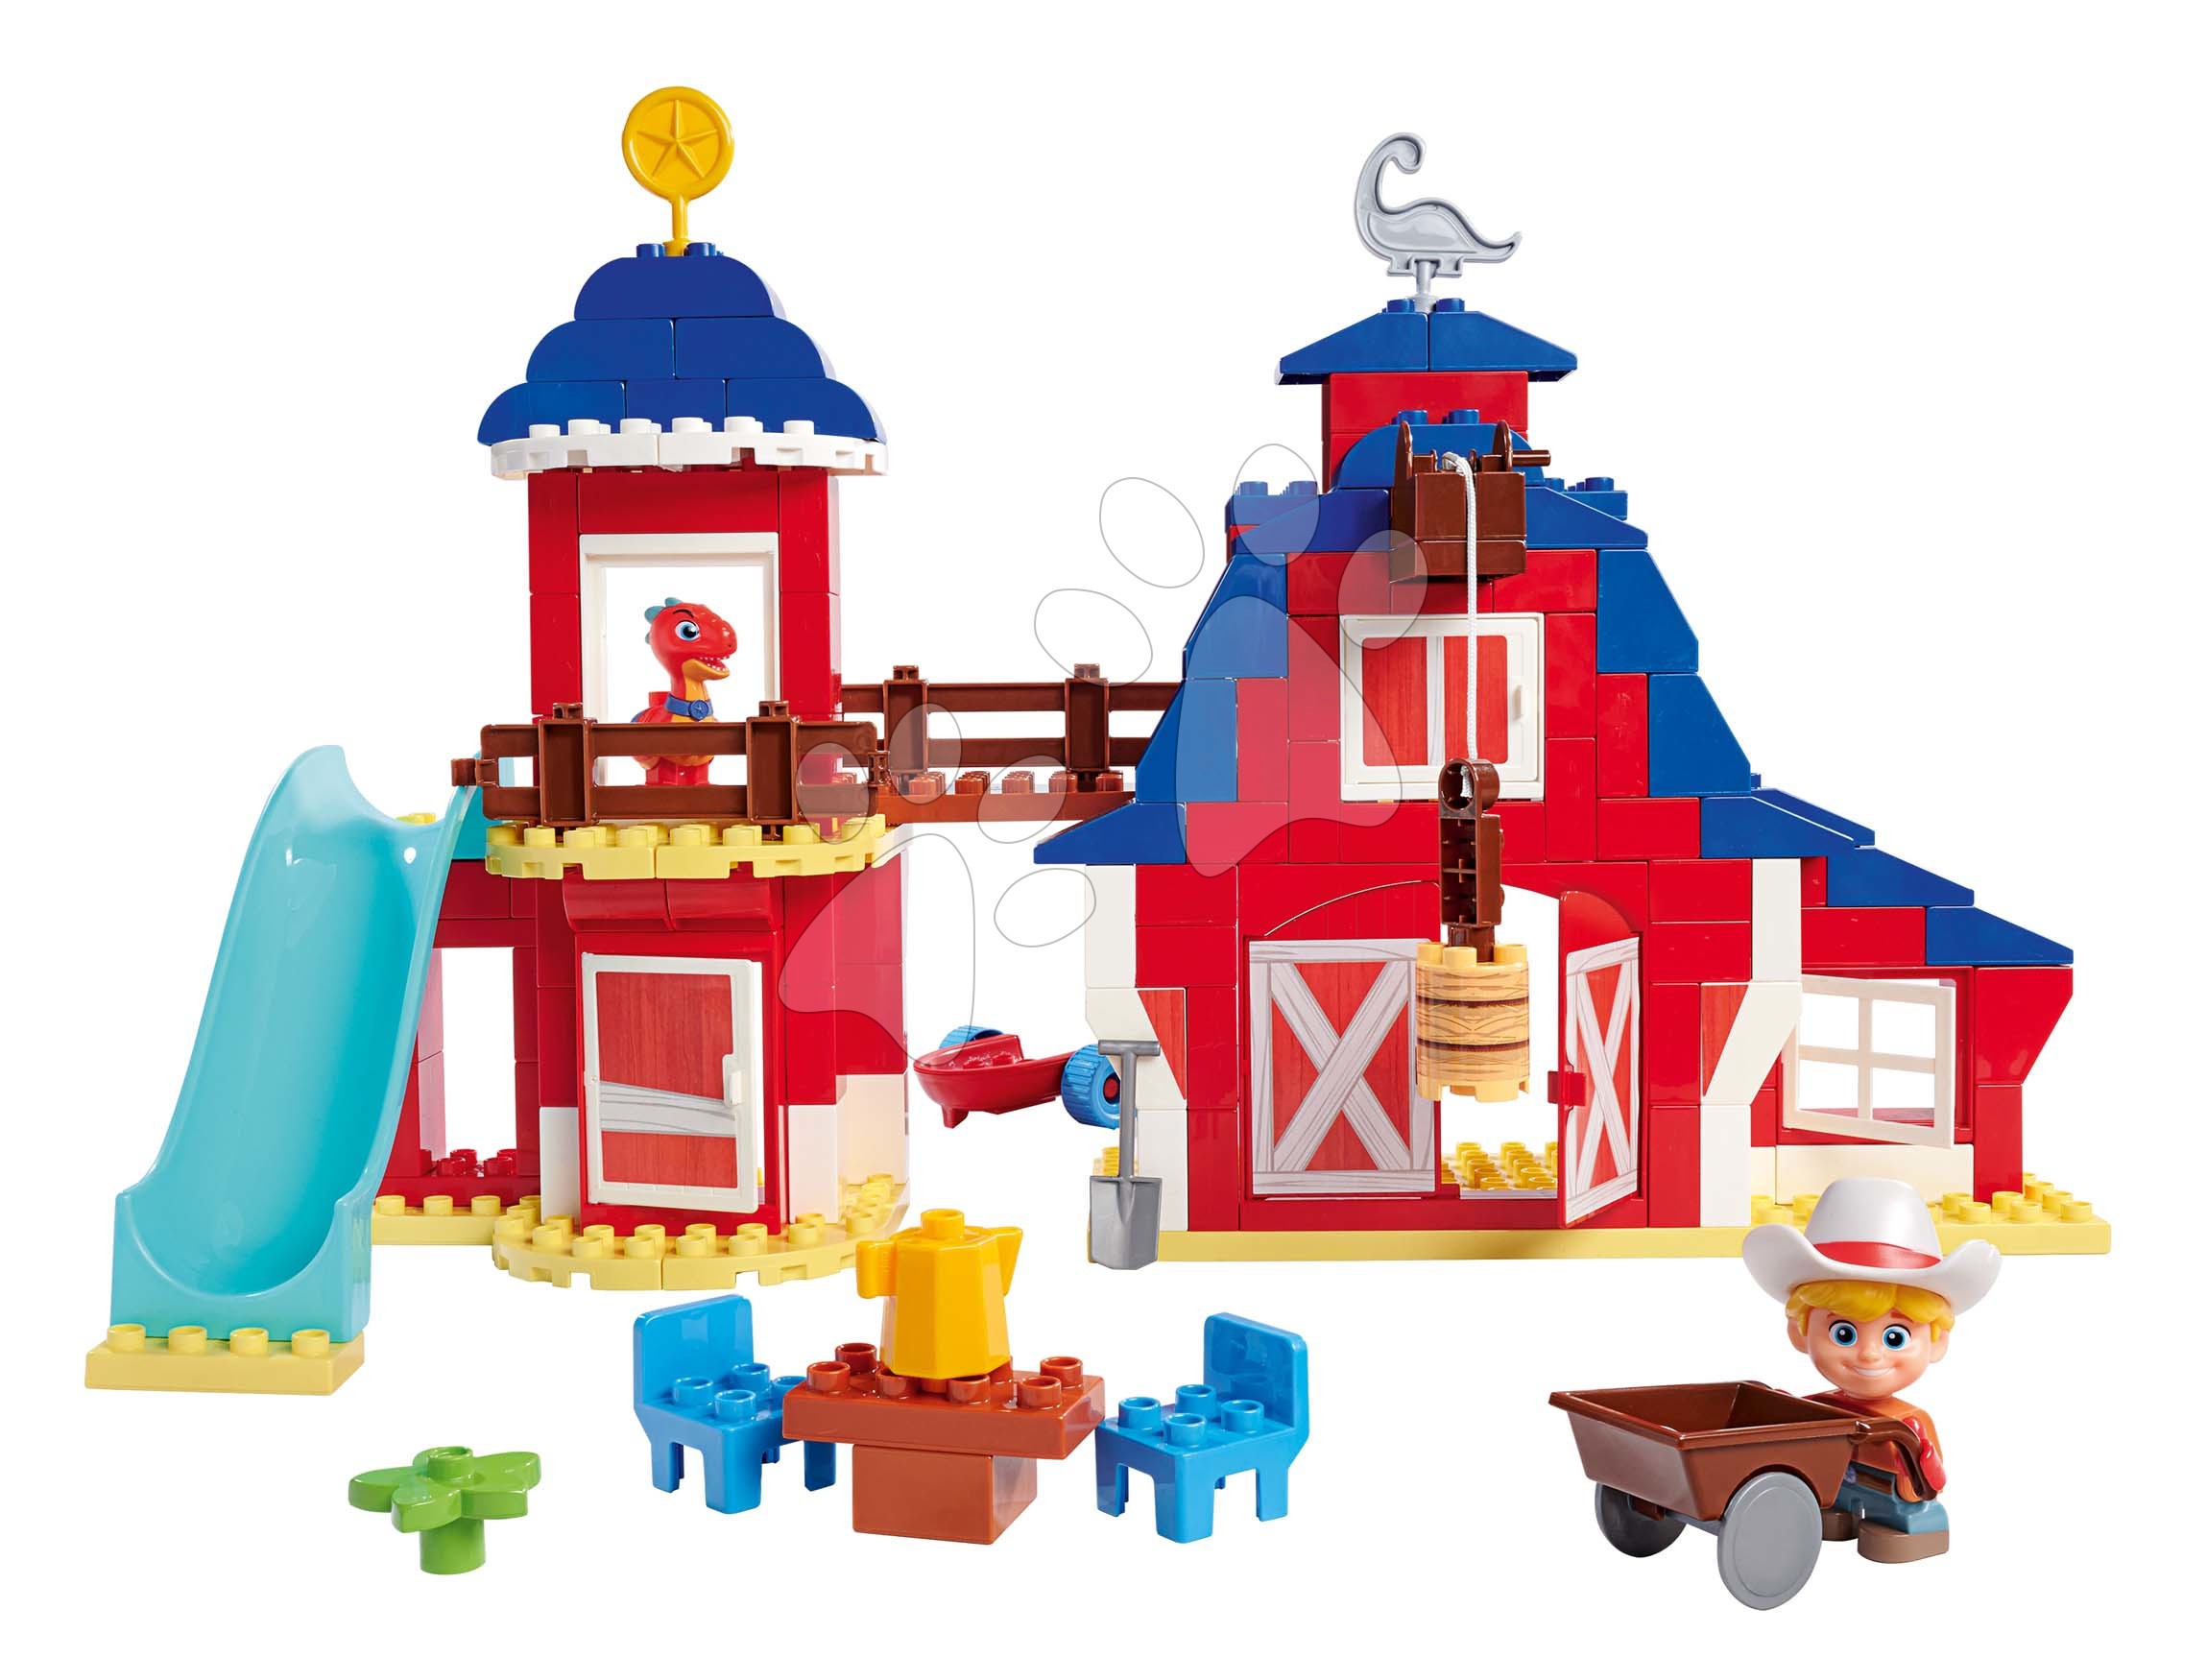 Építőjáték Dino Ranch Clubhouse PlayBig Bloxx BIG klubház csúszdával és 2 figurával 168 darabos 1,5-5 éves korosztálynak